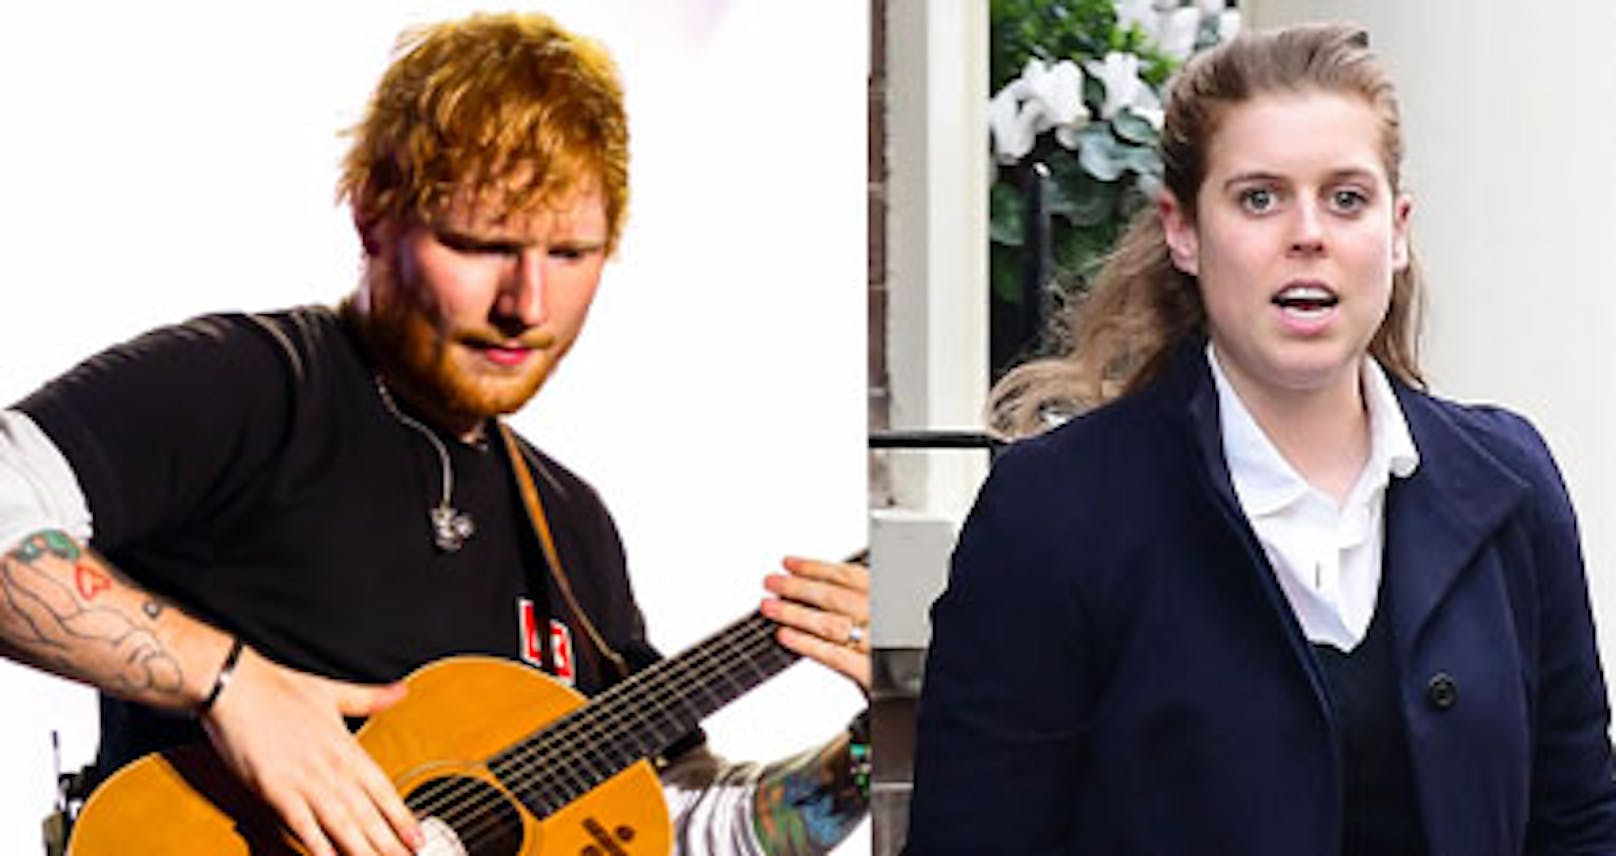 "Dumme Idiotin": Prinzessin verletzte Ed Sheeran